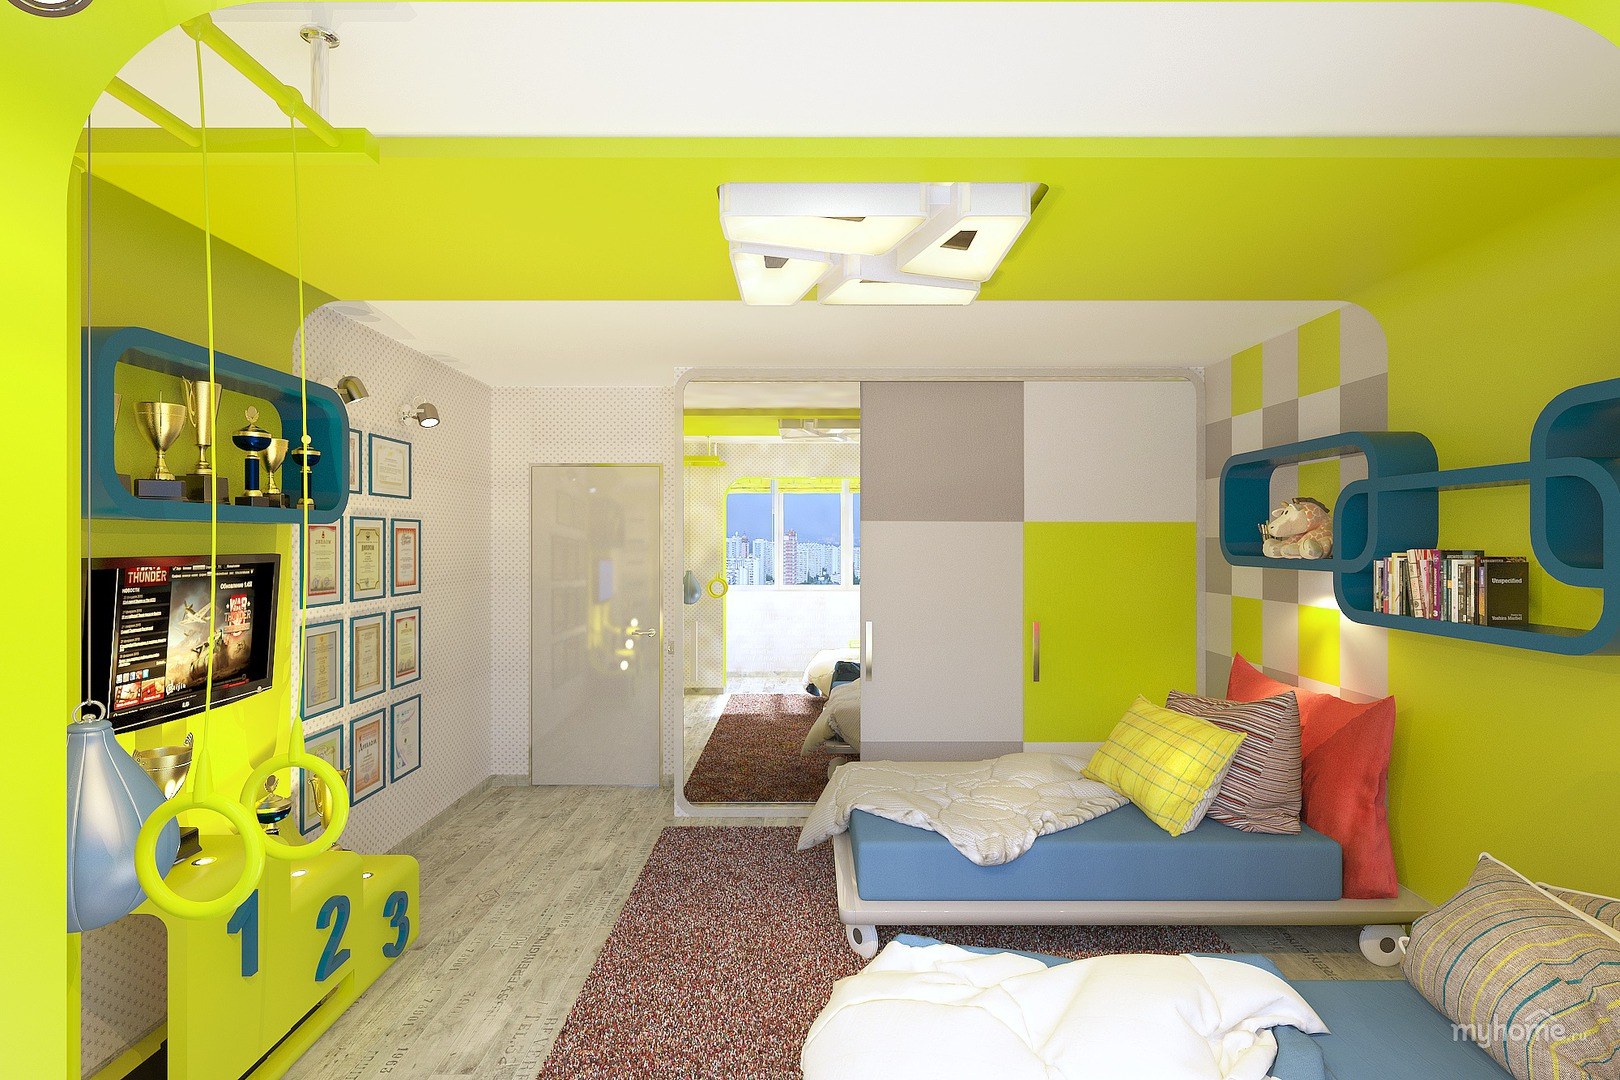 100 фото интересных вариантов планировки детской комнаты для двоих детей